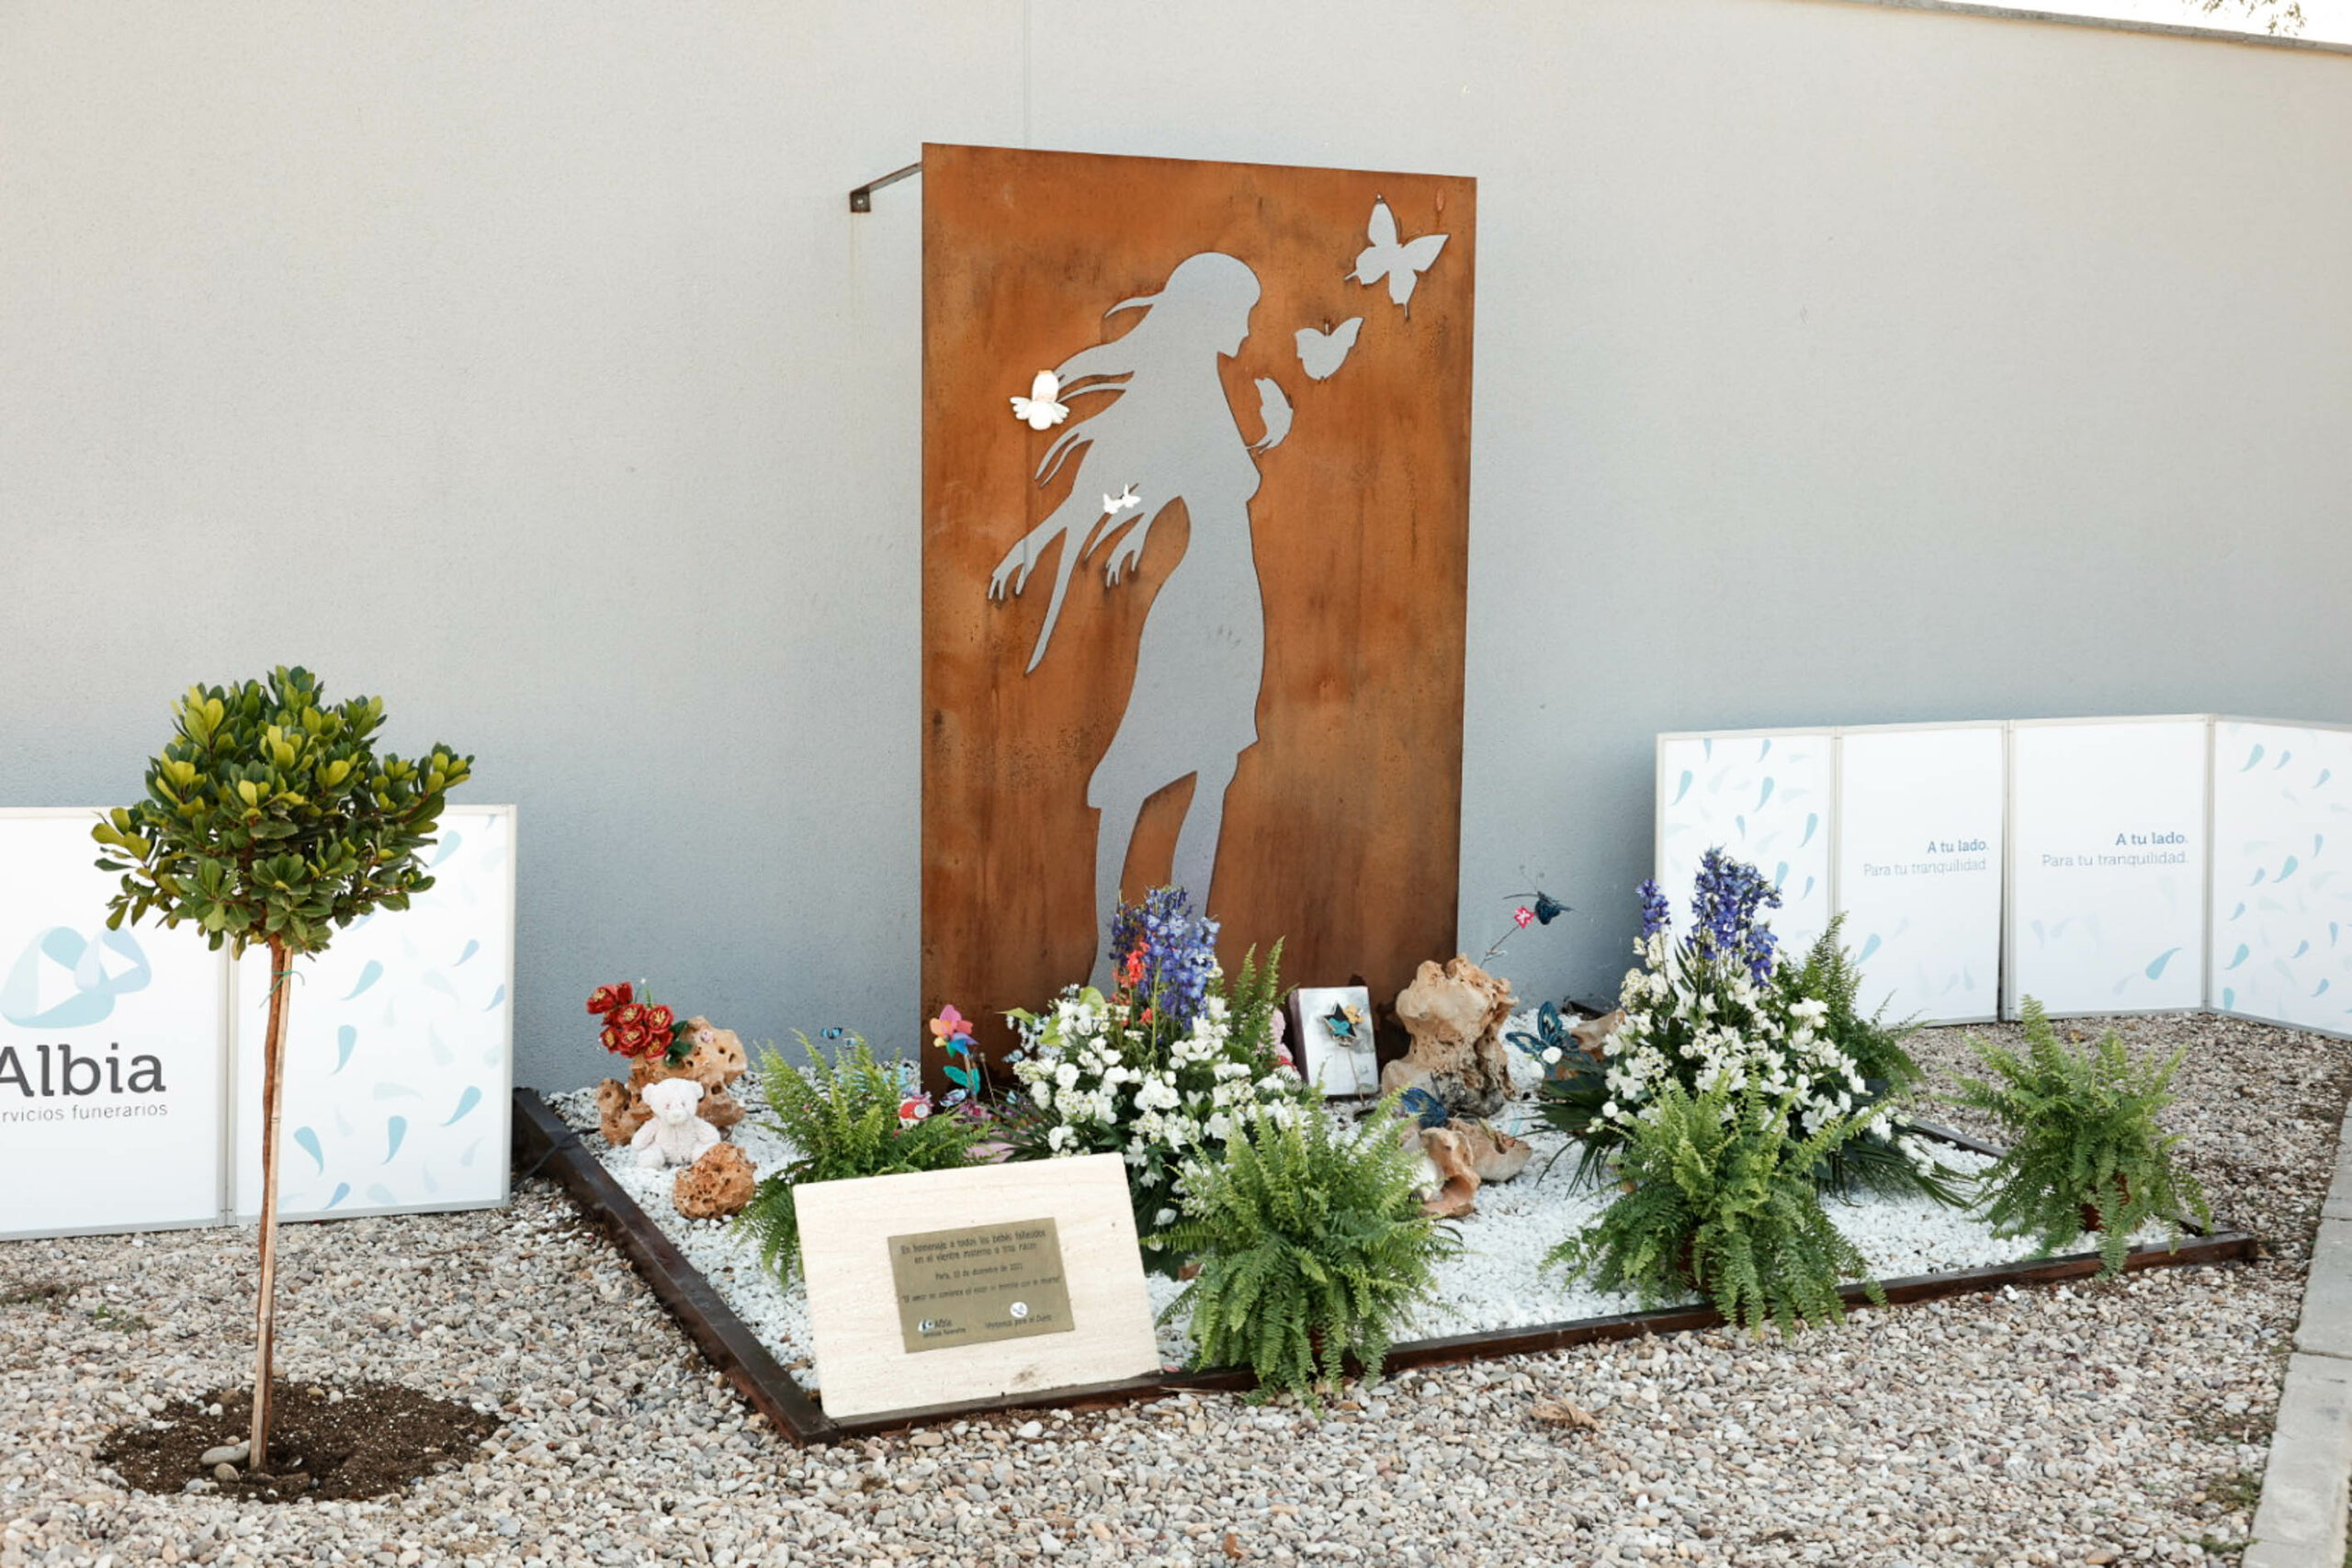 Grupo Albia conmemora la creación de un espacio de duelo gestacional, perinatal o neonatal en el cementerio de Parla